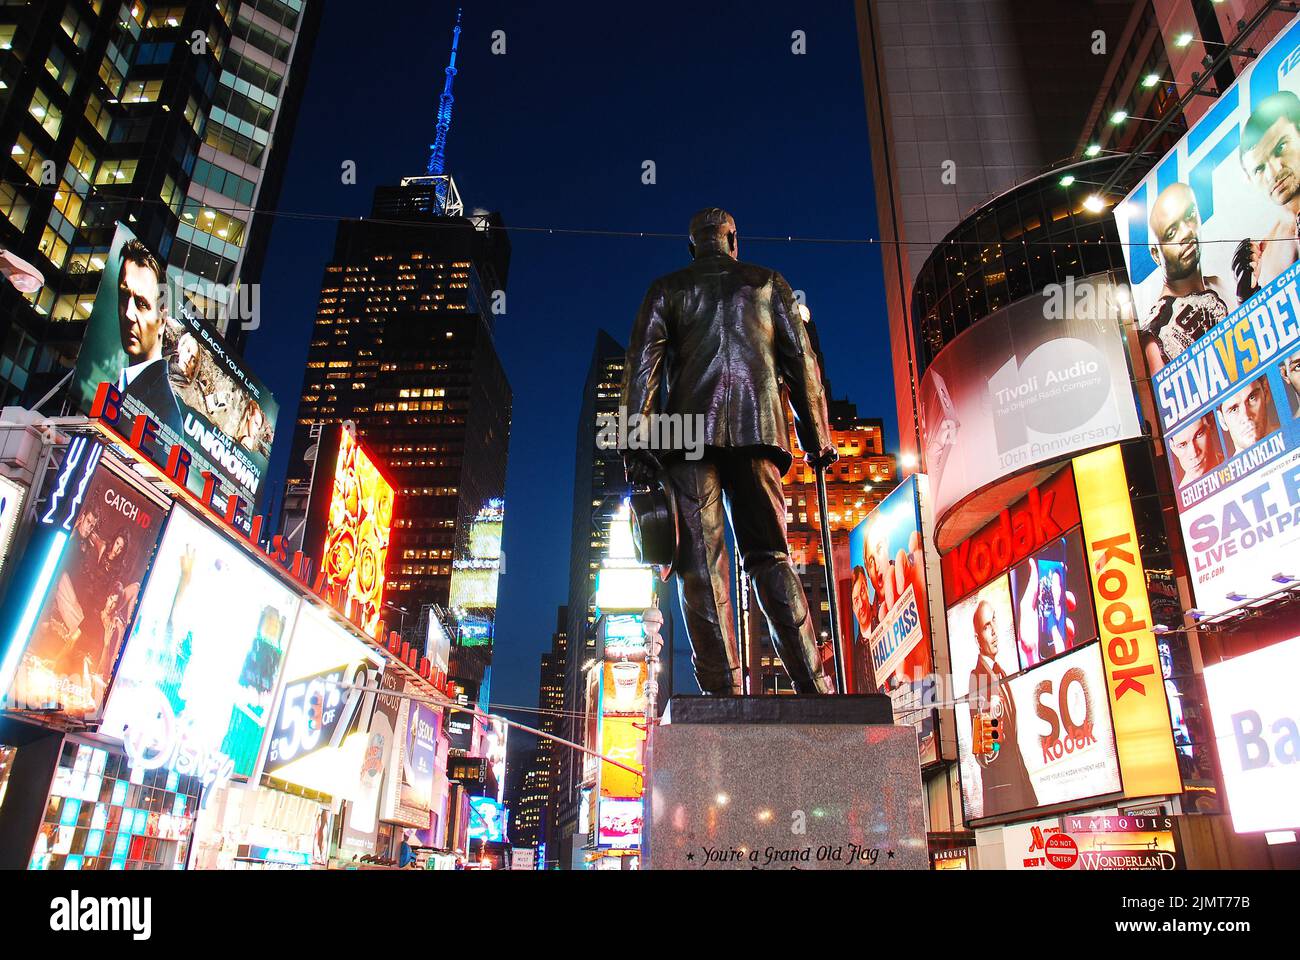 Una escultura de George M Cohan, que escribió Dar mis respetos a Broadway, está en el corazón de Times Square, Nueva York, rodeado de anuncios brillantes Foto de stock